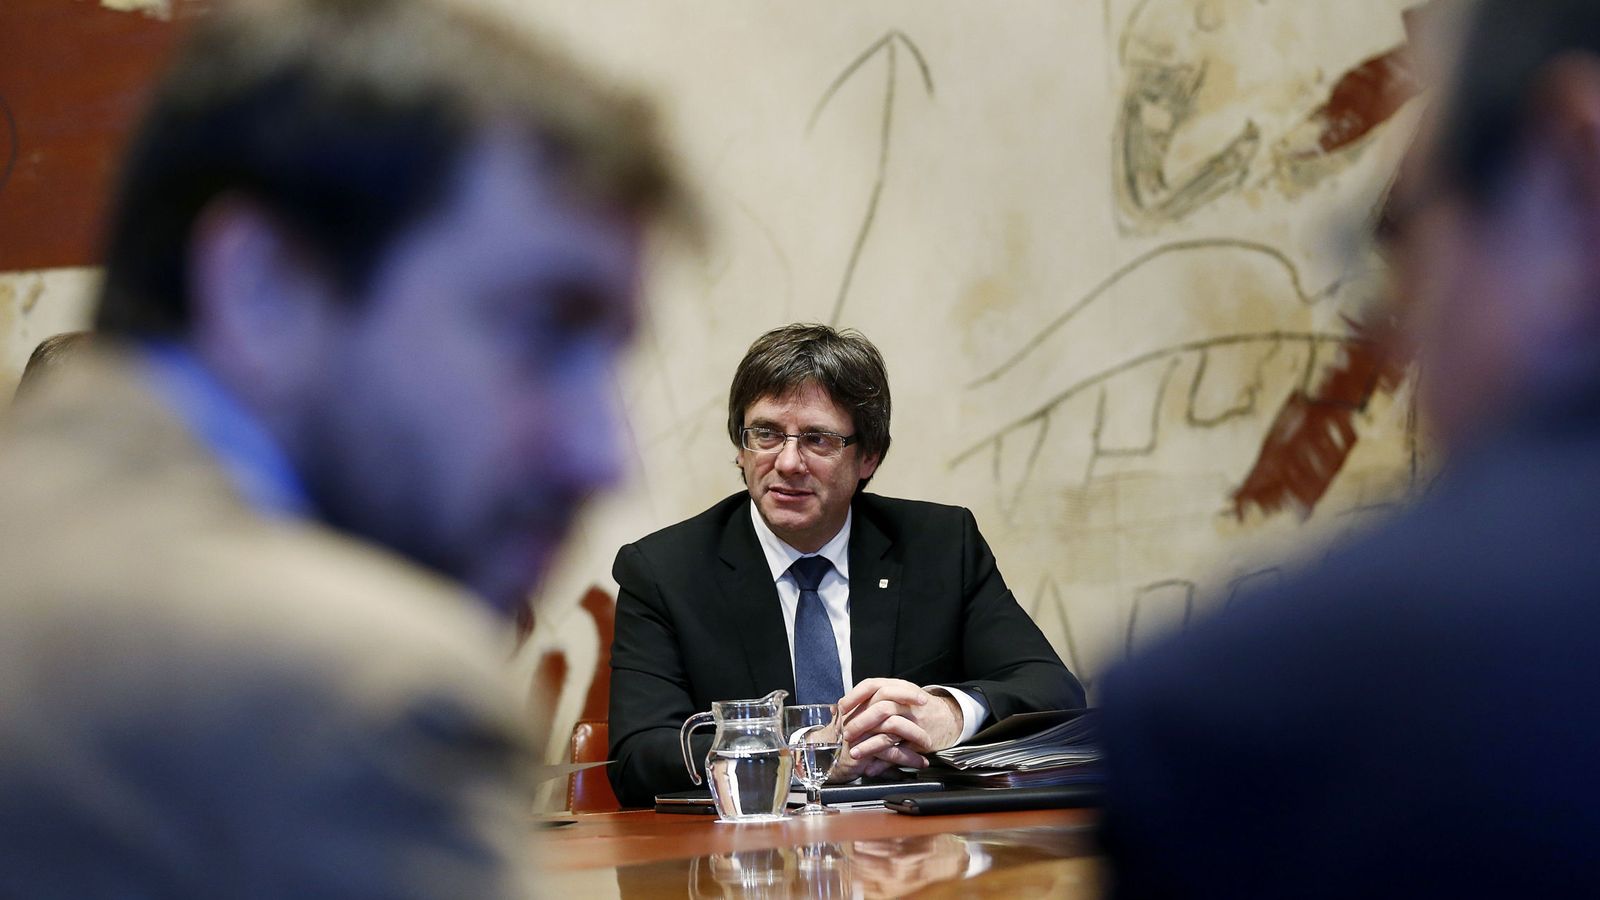 Foto: El presidente de la Generalitat, Carles Puigdemont, durante una reunión del Gobierno catalán. (EFE)